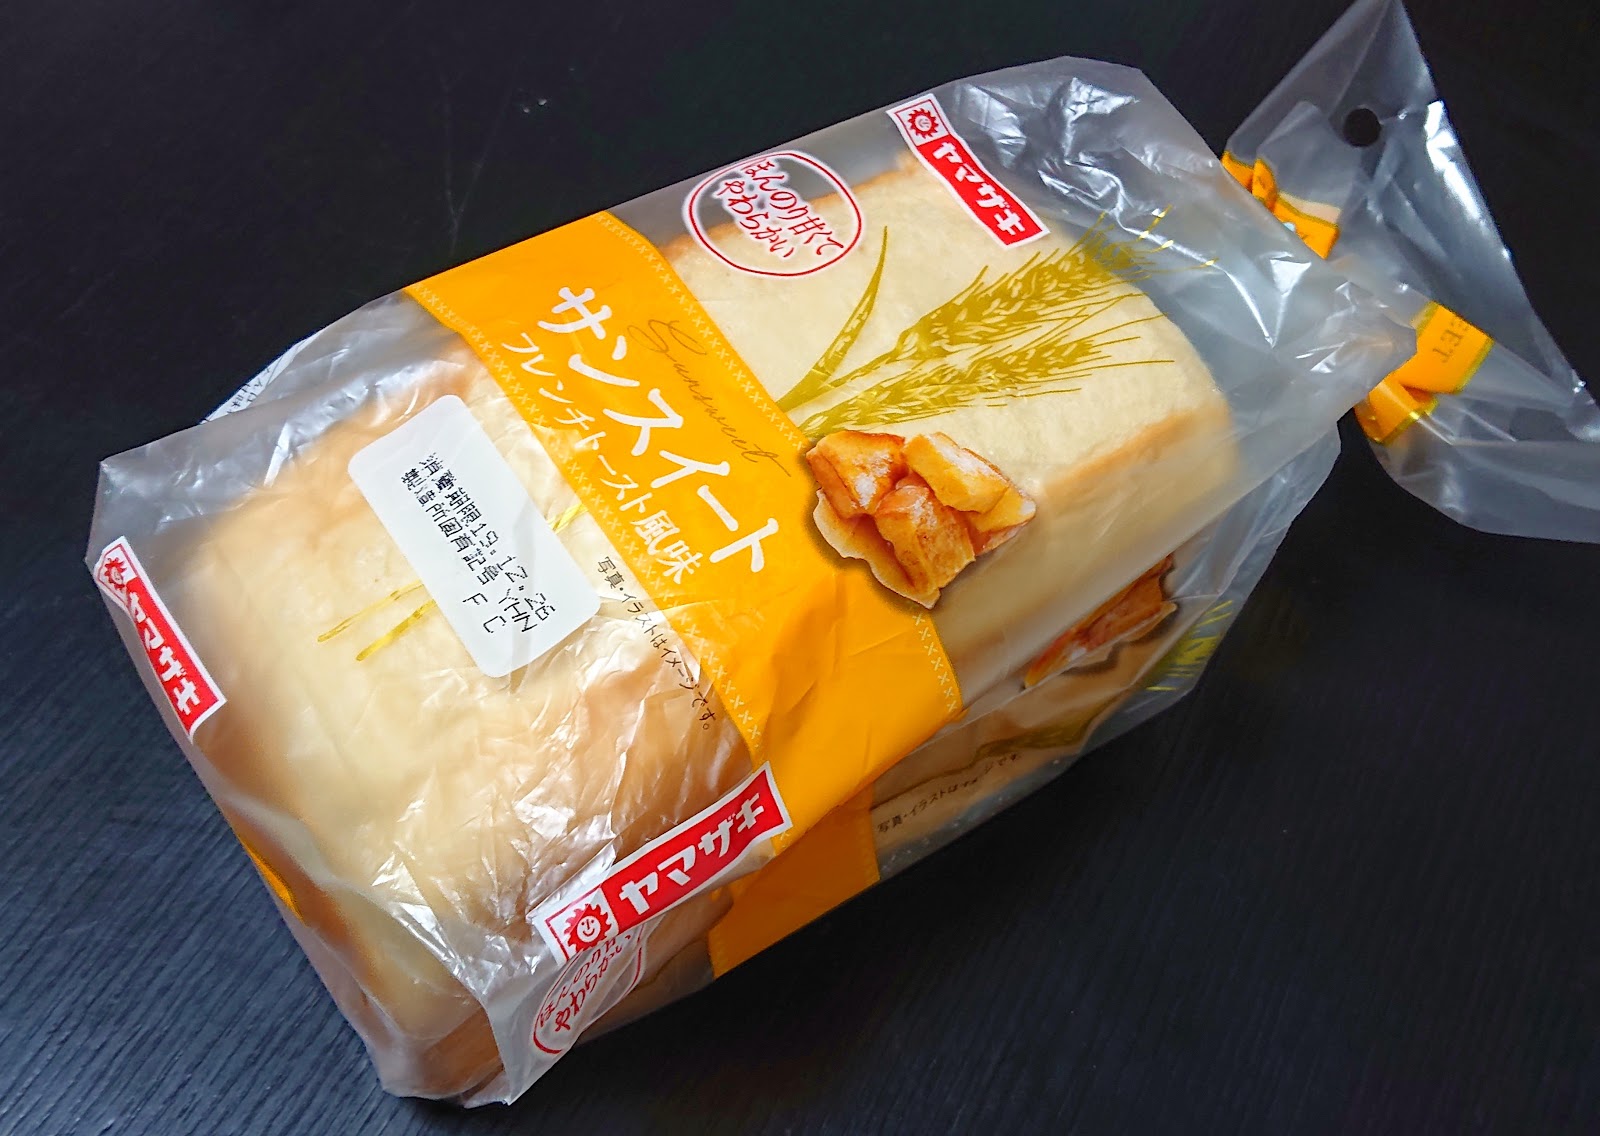 ヤマザキ サンスイート フレンチトースト風味 ほんのり甘いミニブレッド